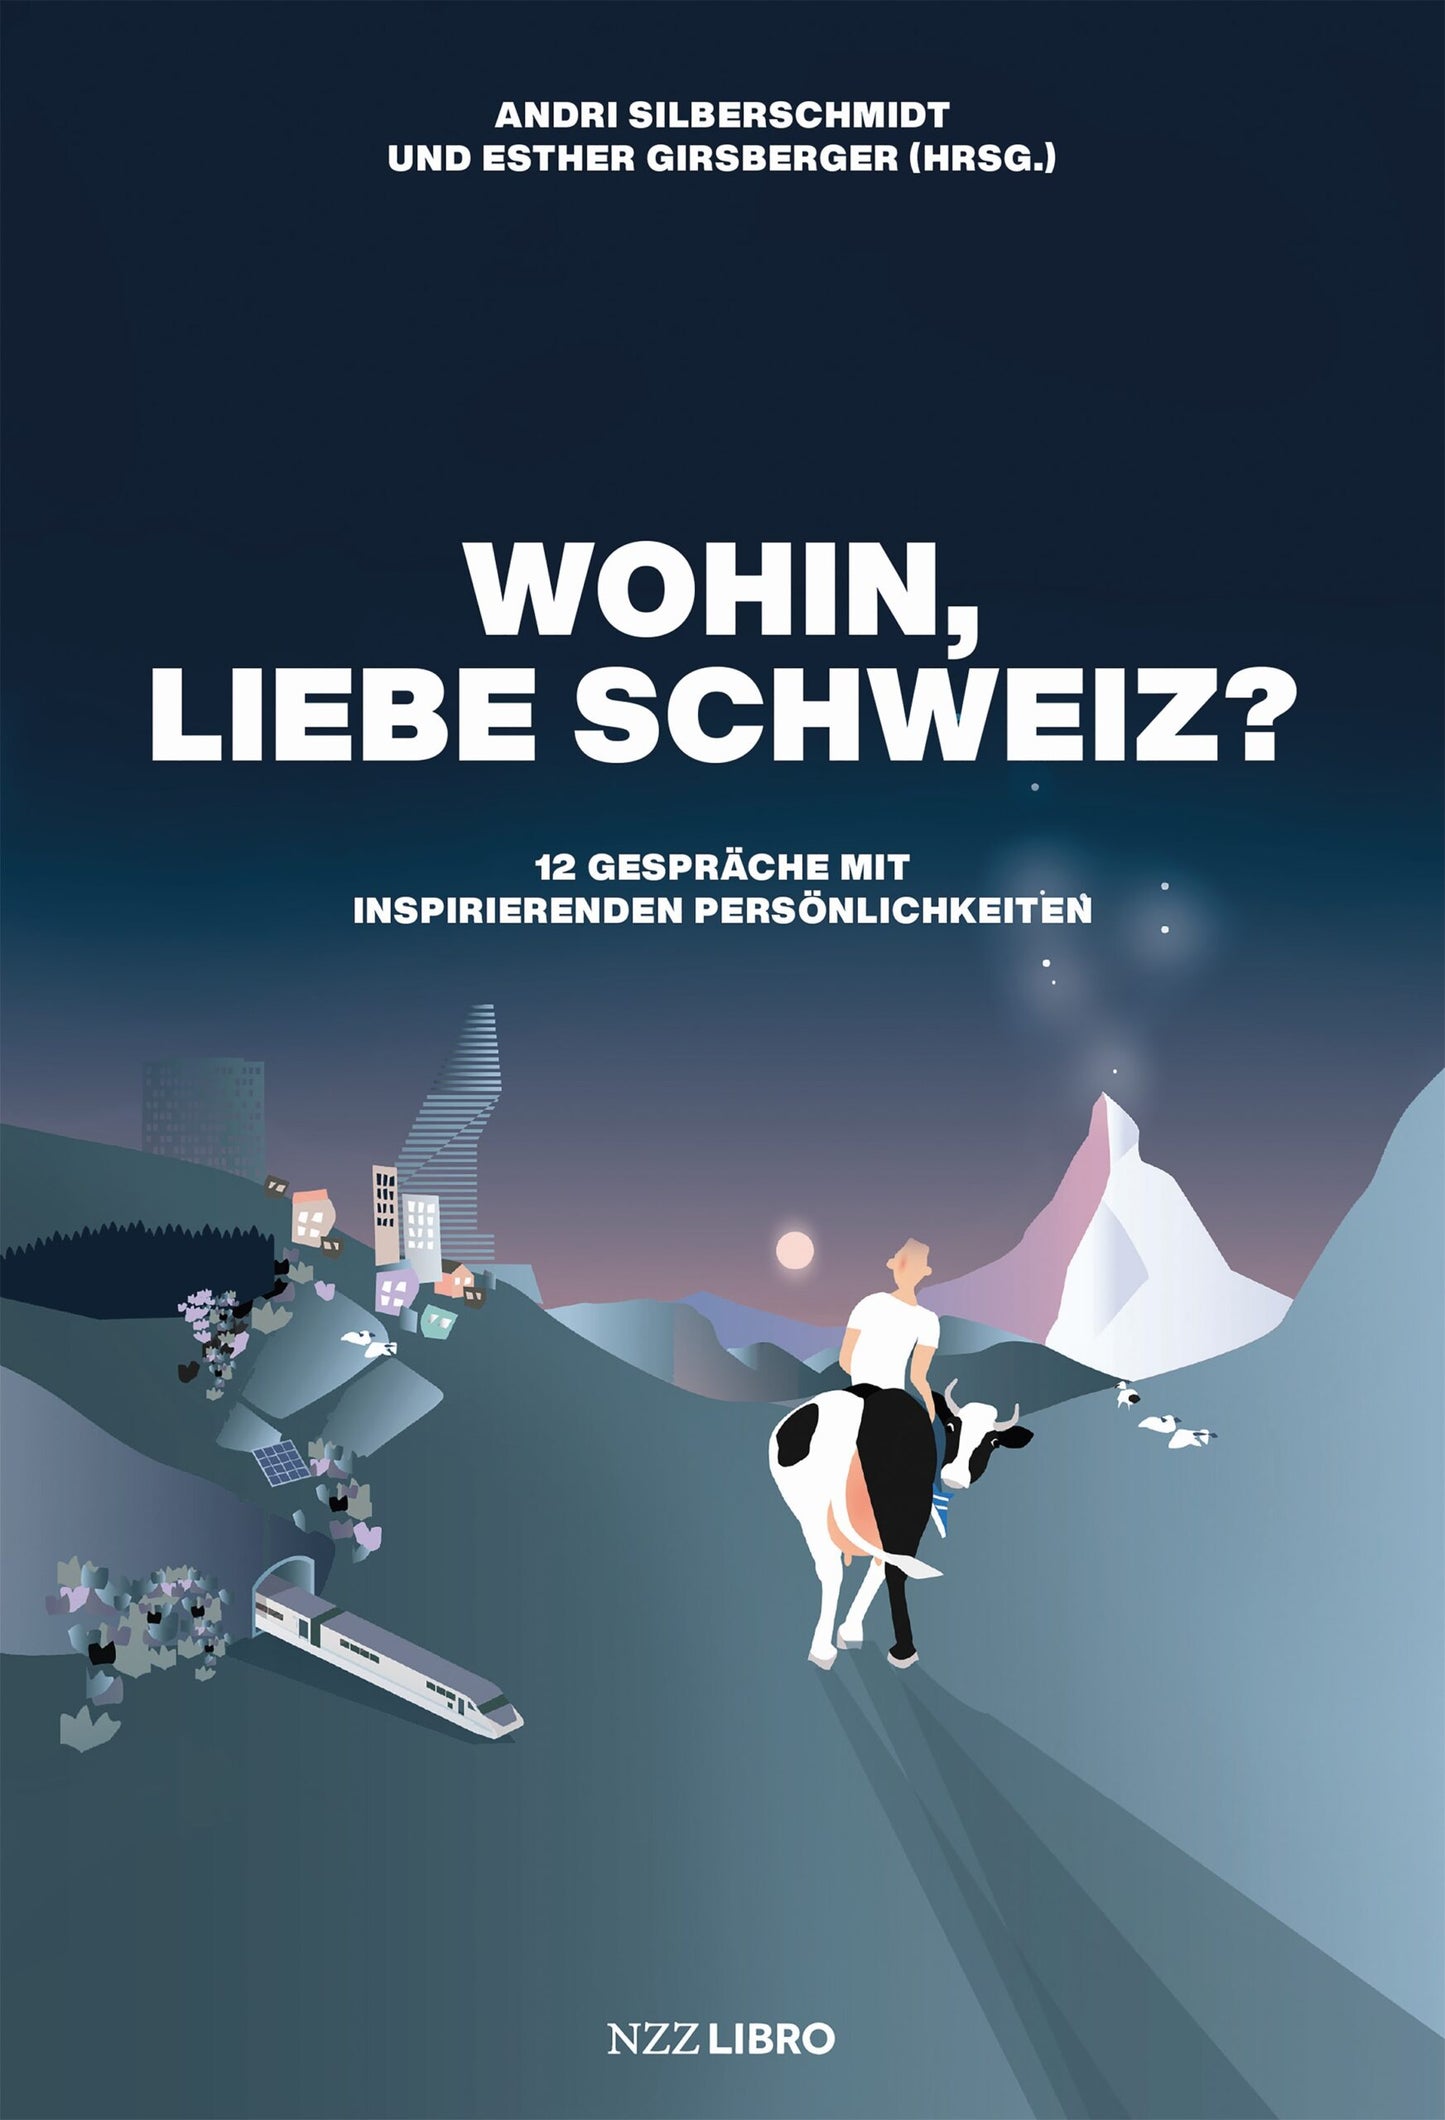 Wohin, liebe Schweiz? (Andri Silberschmidt & Esther Girsberger (Hrsg.))